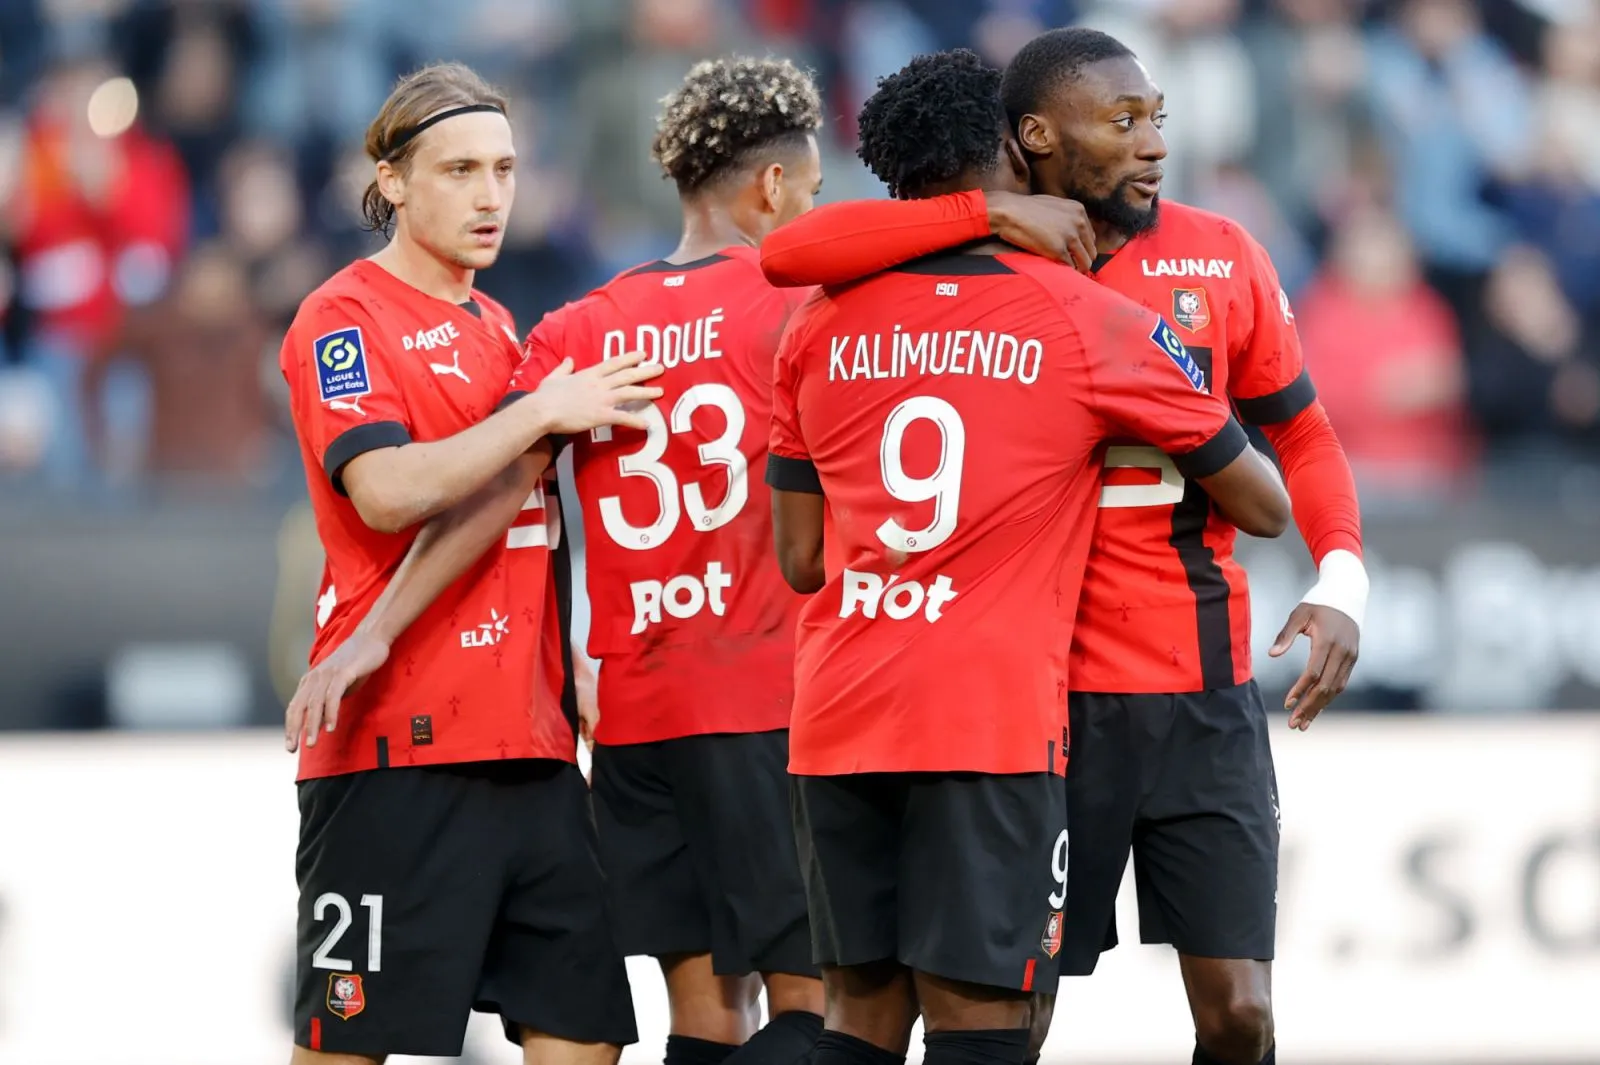 Pronostic Nantes Rennes : Analyse, cotes et prono du match de Ligue 1